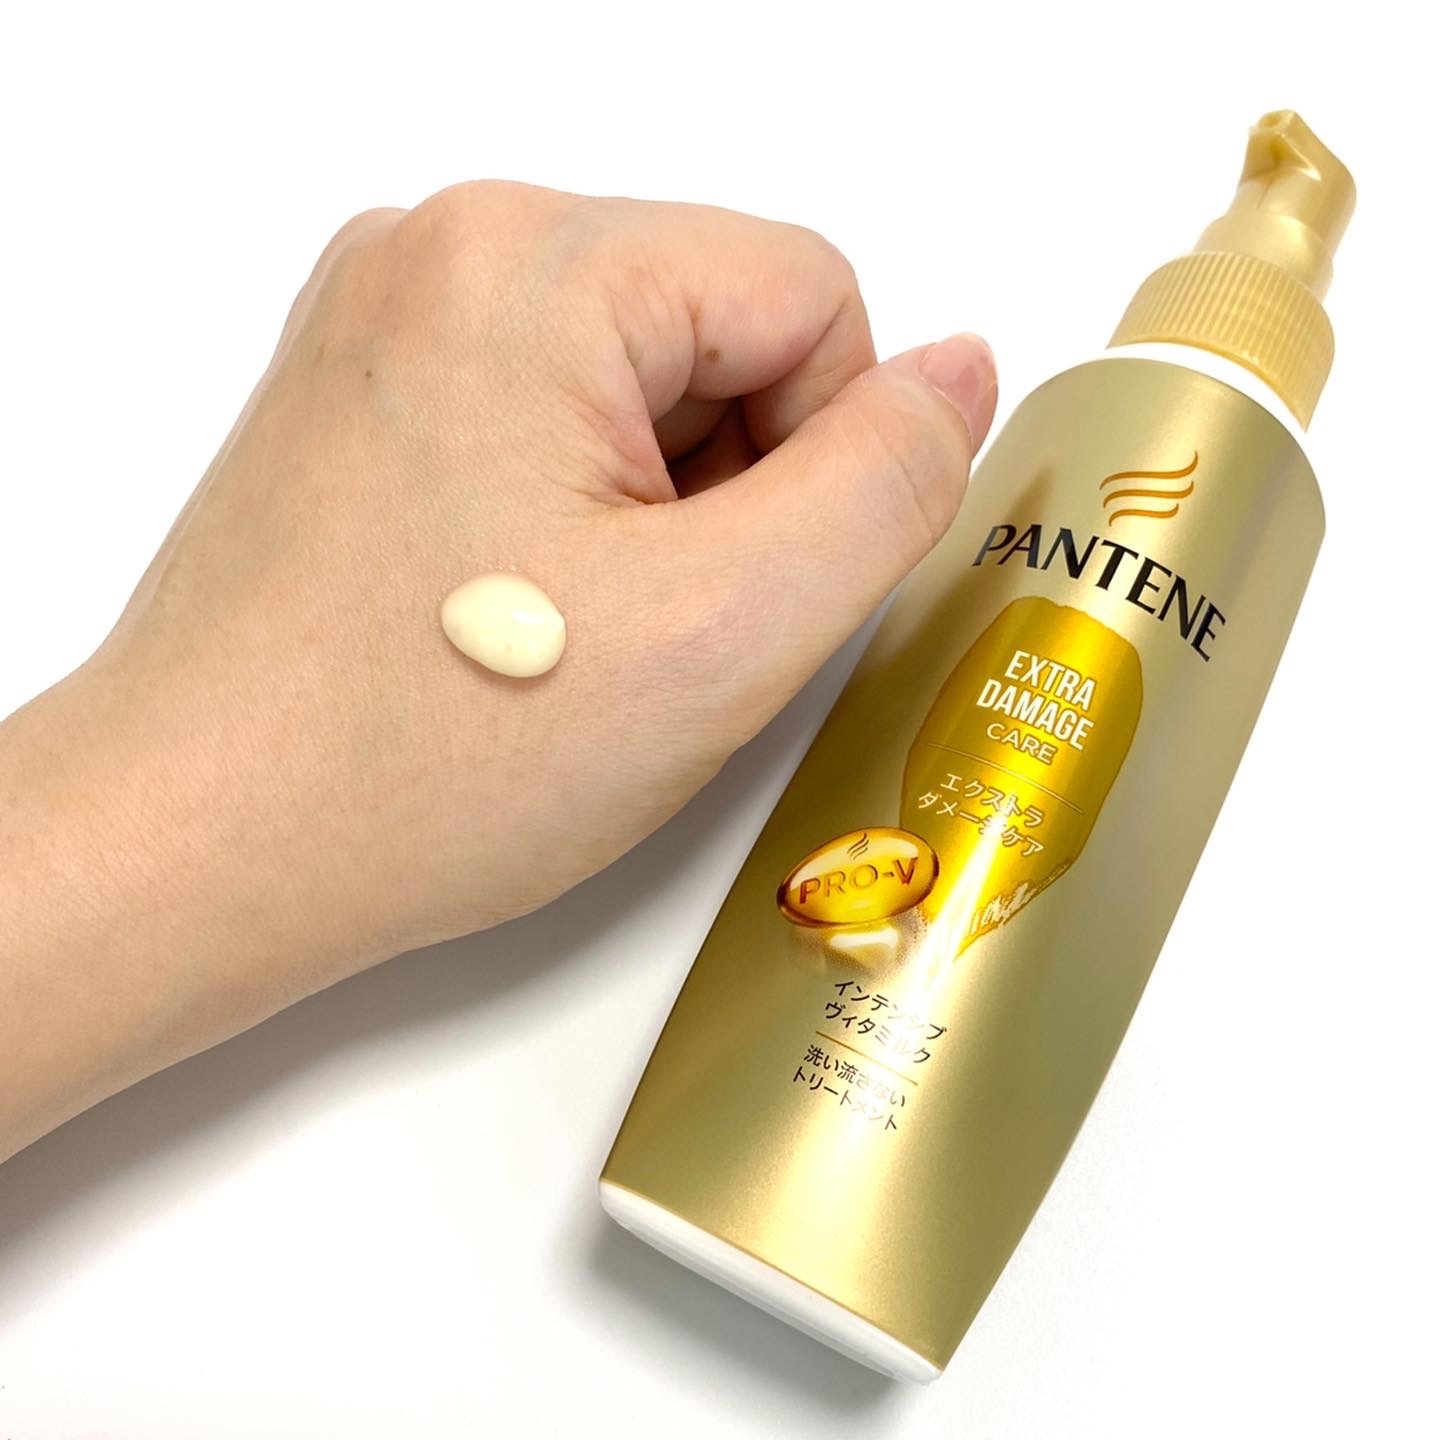 PANTENE(パンテーン)エクストラダメージケア インテンシブヴィタミルクを使ったminoriさんのクチコミ画像3